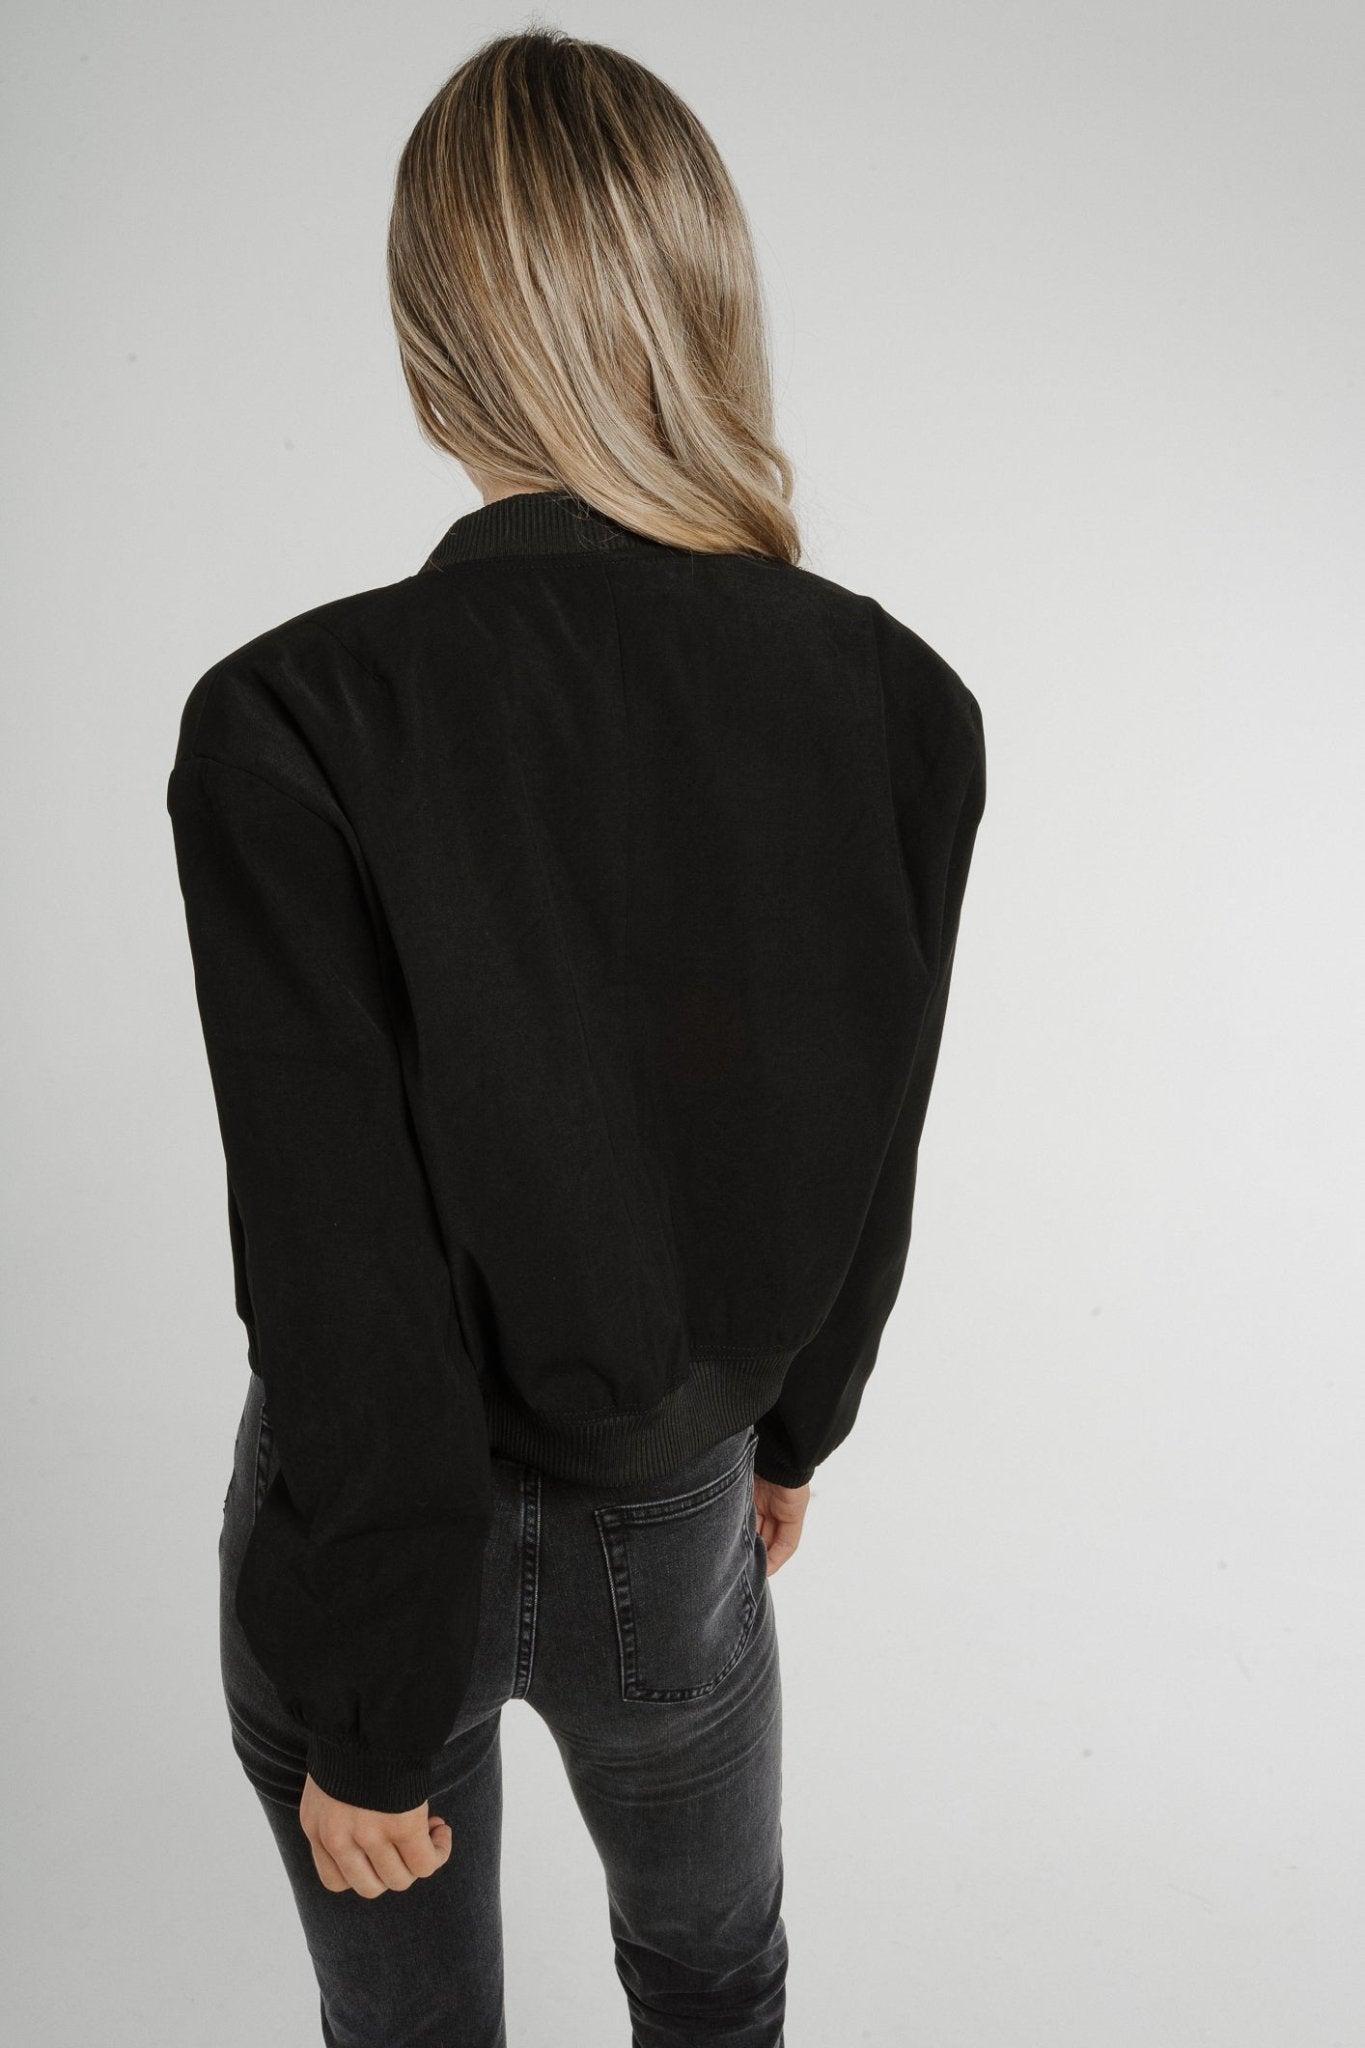 Indie Cropped Jacket In Black - The Walk in Wardrobe